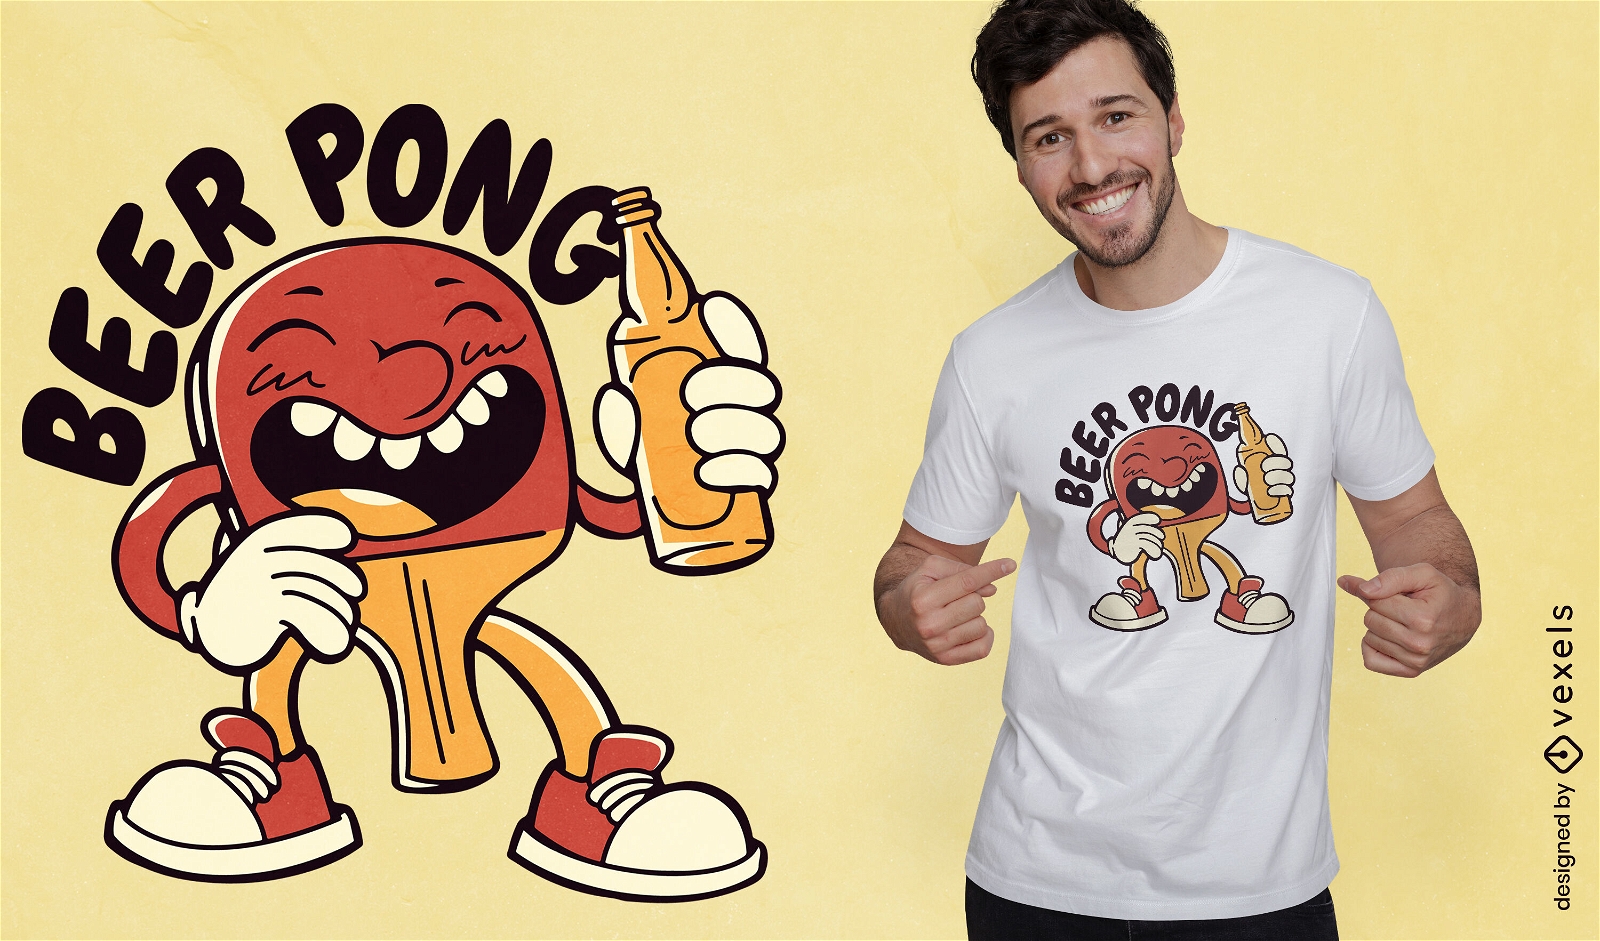 Beer Pong Cartoon Character T-shirt Design Vector Download